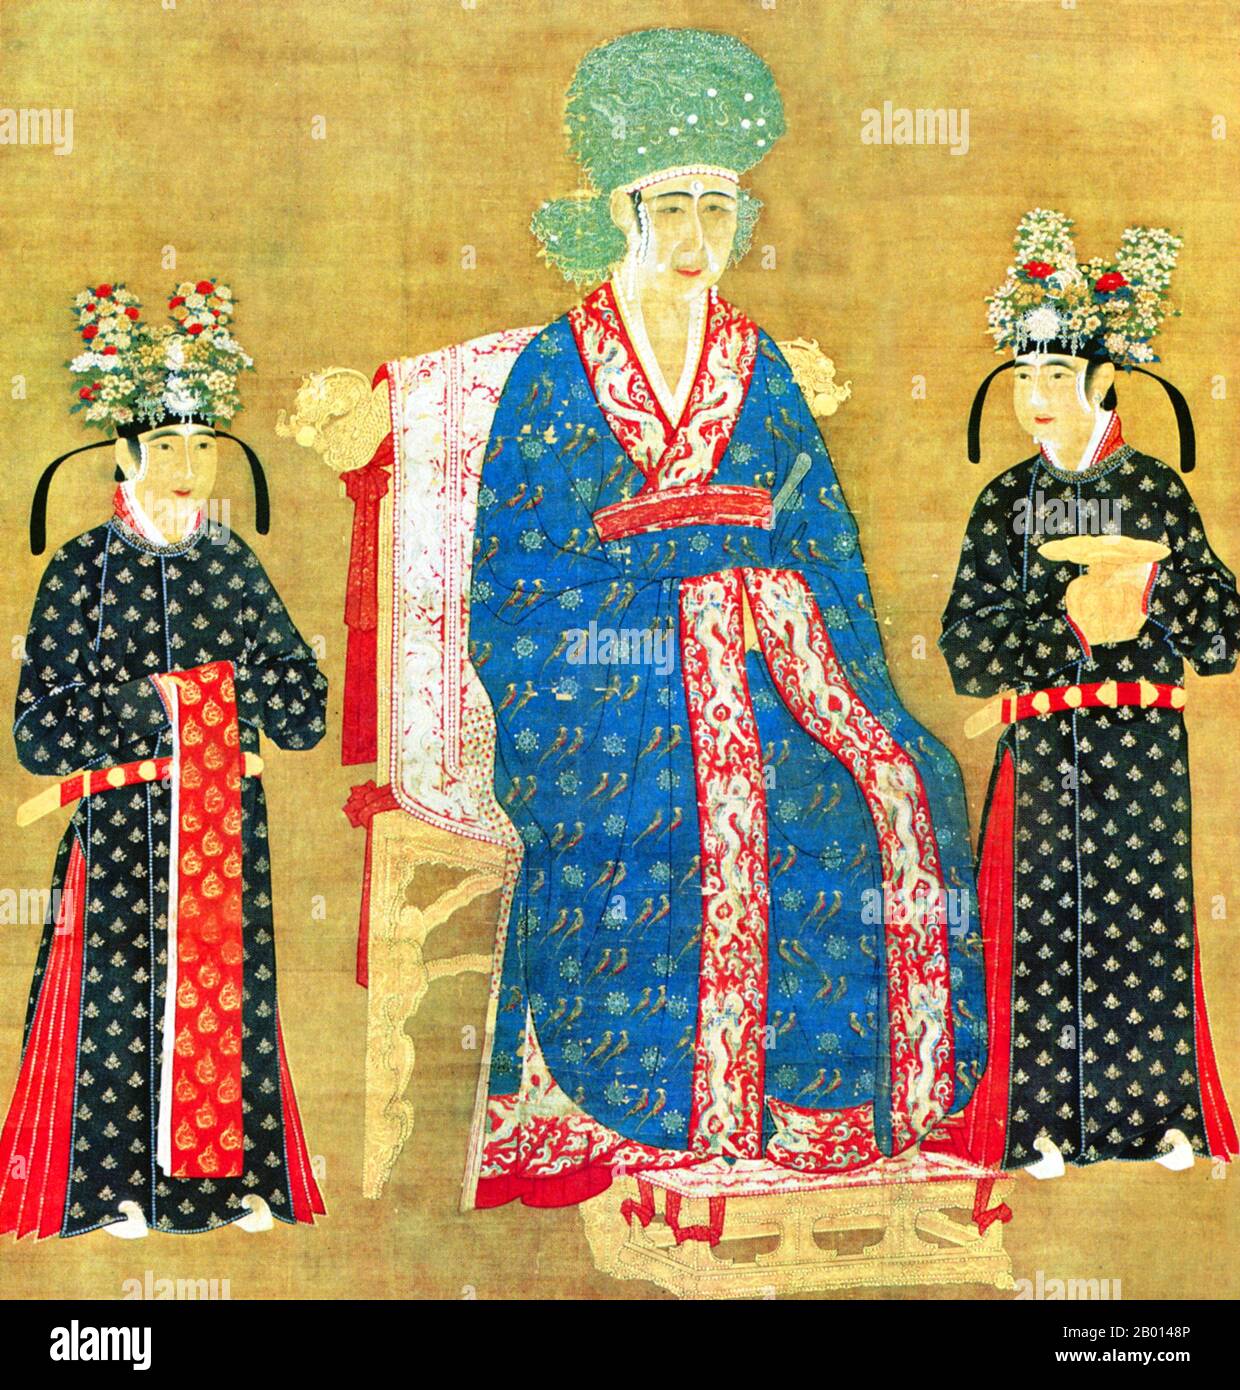 Cina: Imperatrice Cao (1016-1079), consorte dell'Imperatore Renzong, 4° sovrano della Dinastia Song (r.1022-1063). Pittura a scorrimento sospesa, c. 1022-1063. L'imperatrice Cao, conosciuta anche come Cisheng Guangxiang, fu la consorte dell'Imperatore Renzong. Salì al rango di imperatrice dopo che Renzong pose la sua prima imperatrice, l'imperatrice Guo. Ben rispettata dai funzionari statali, aiutò a governare il regno quando l'imperatore era malato. Allo stesso modo, quando il suo figlio adottivo, l'imperatore Yingzong, salì al trono ed era gravemente malato, servì brevemente come reggente al suo posto. Foto Stock